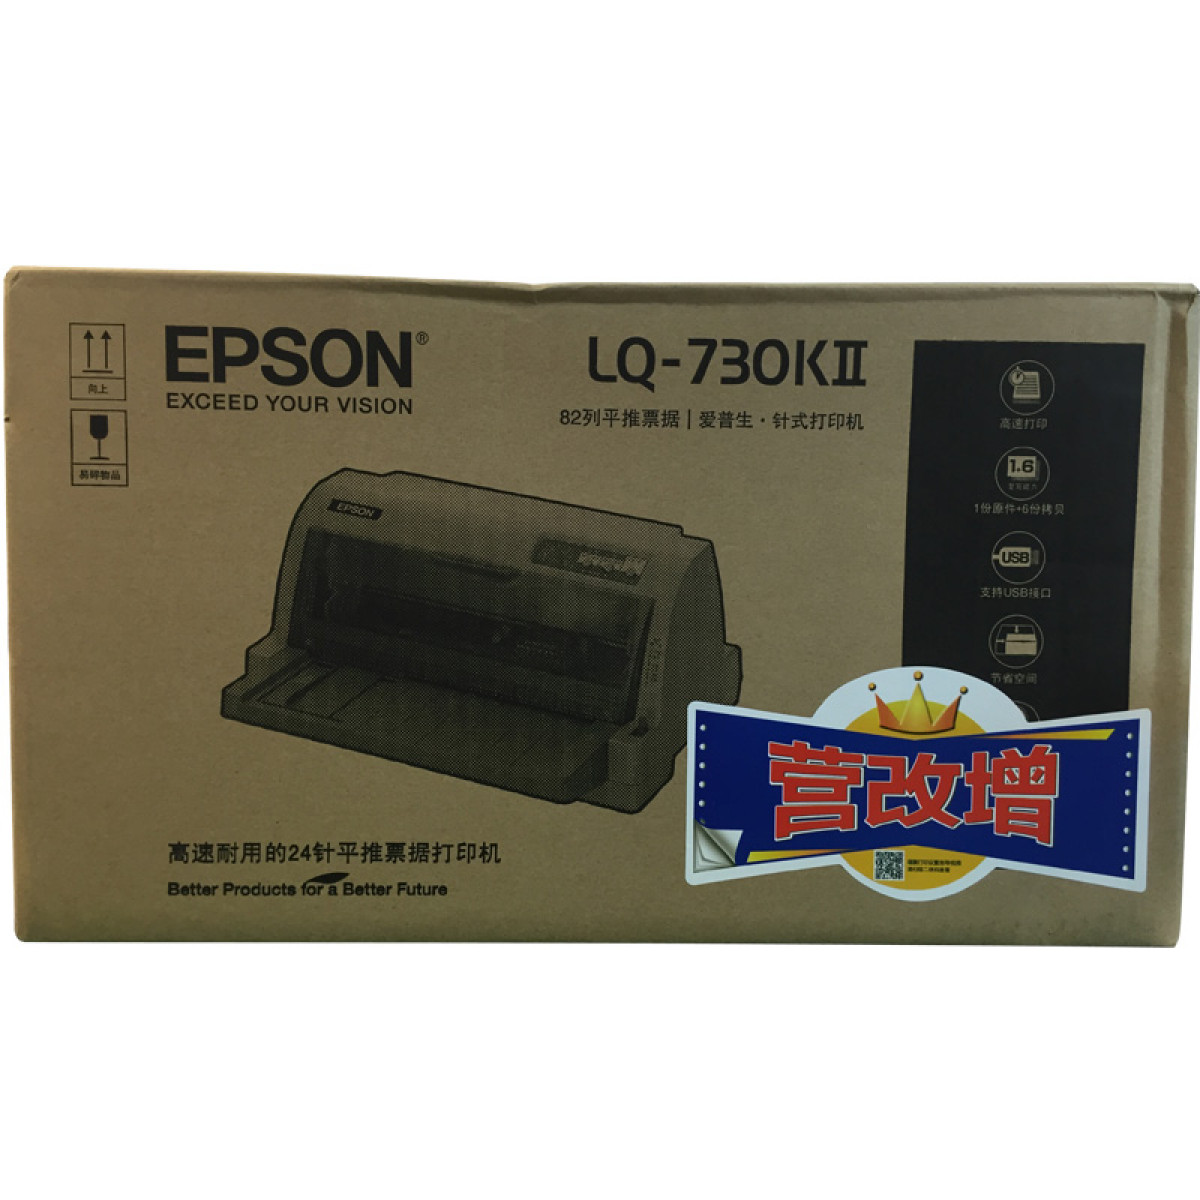 针式打印机 爱普生/EPSON LQ-730KII 平推式 不支持